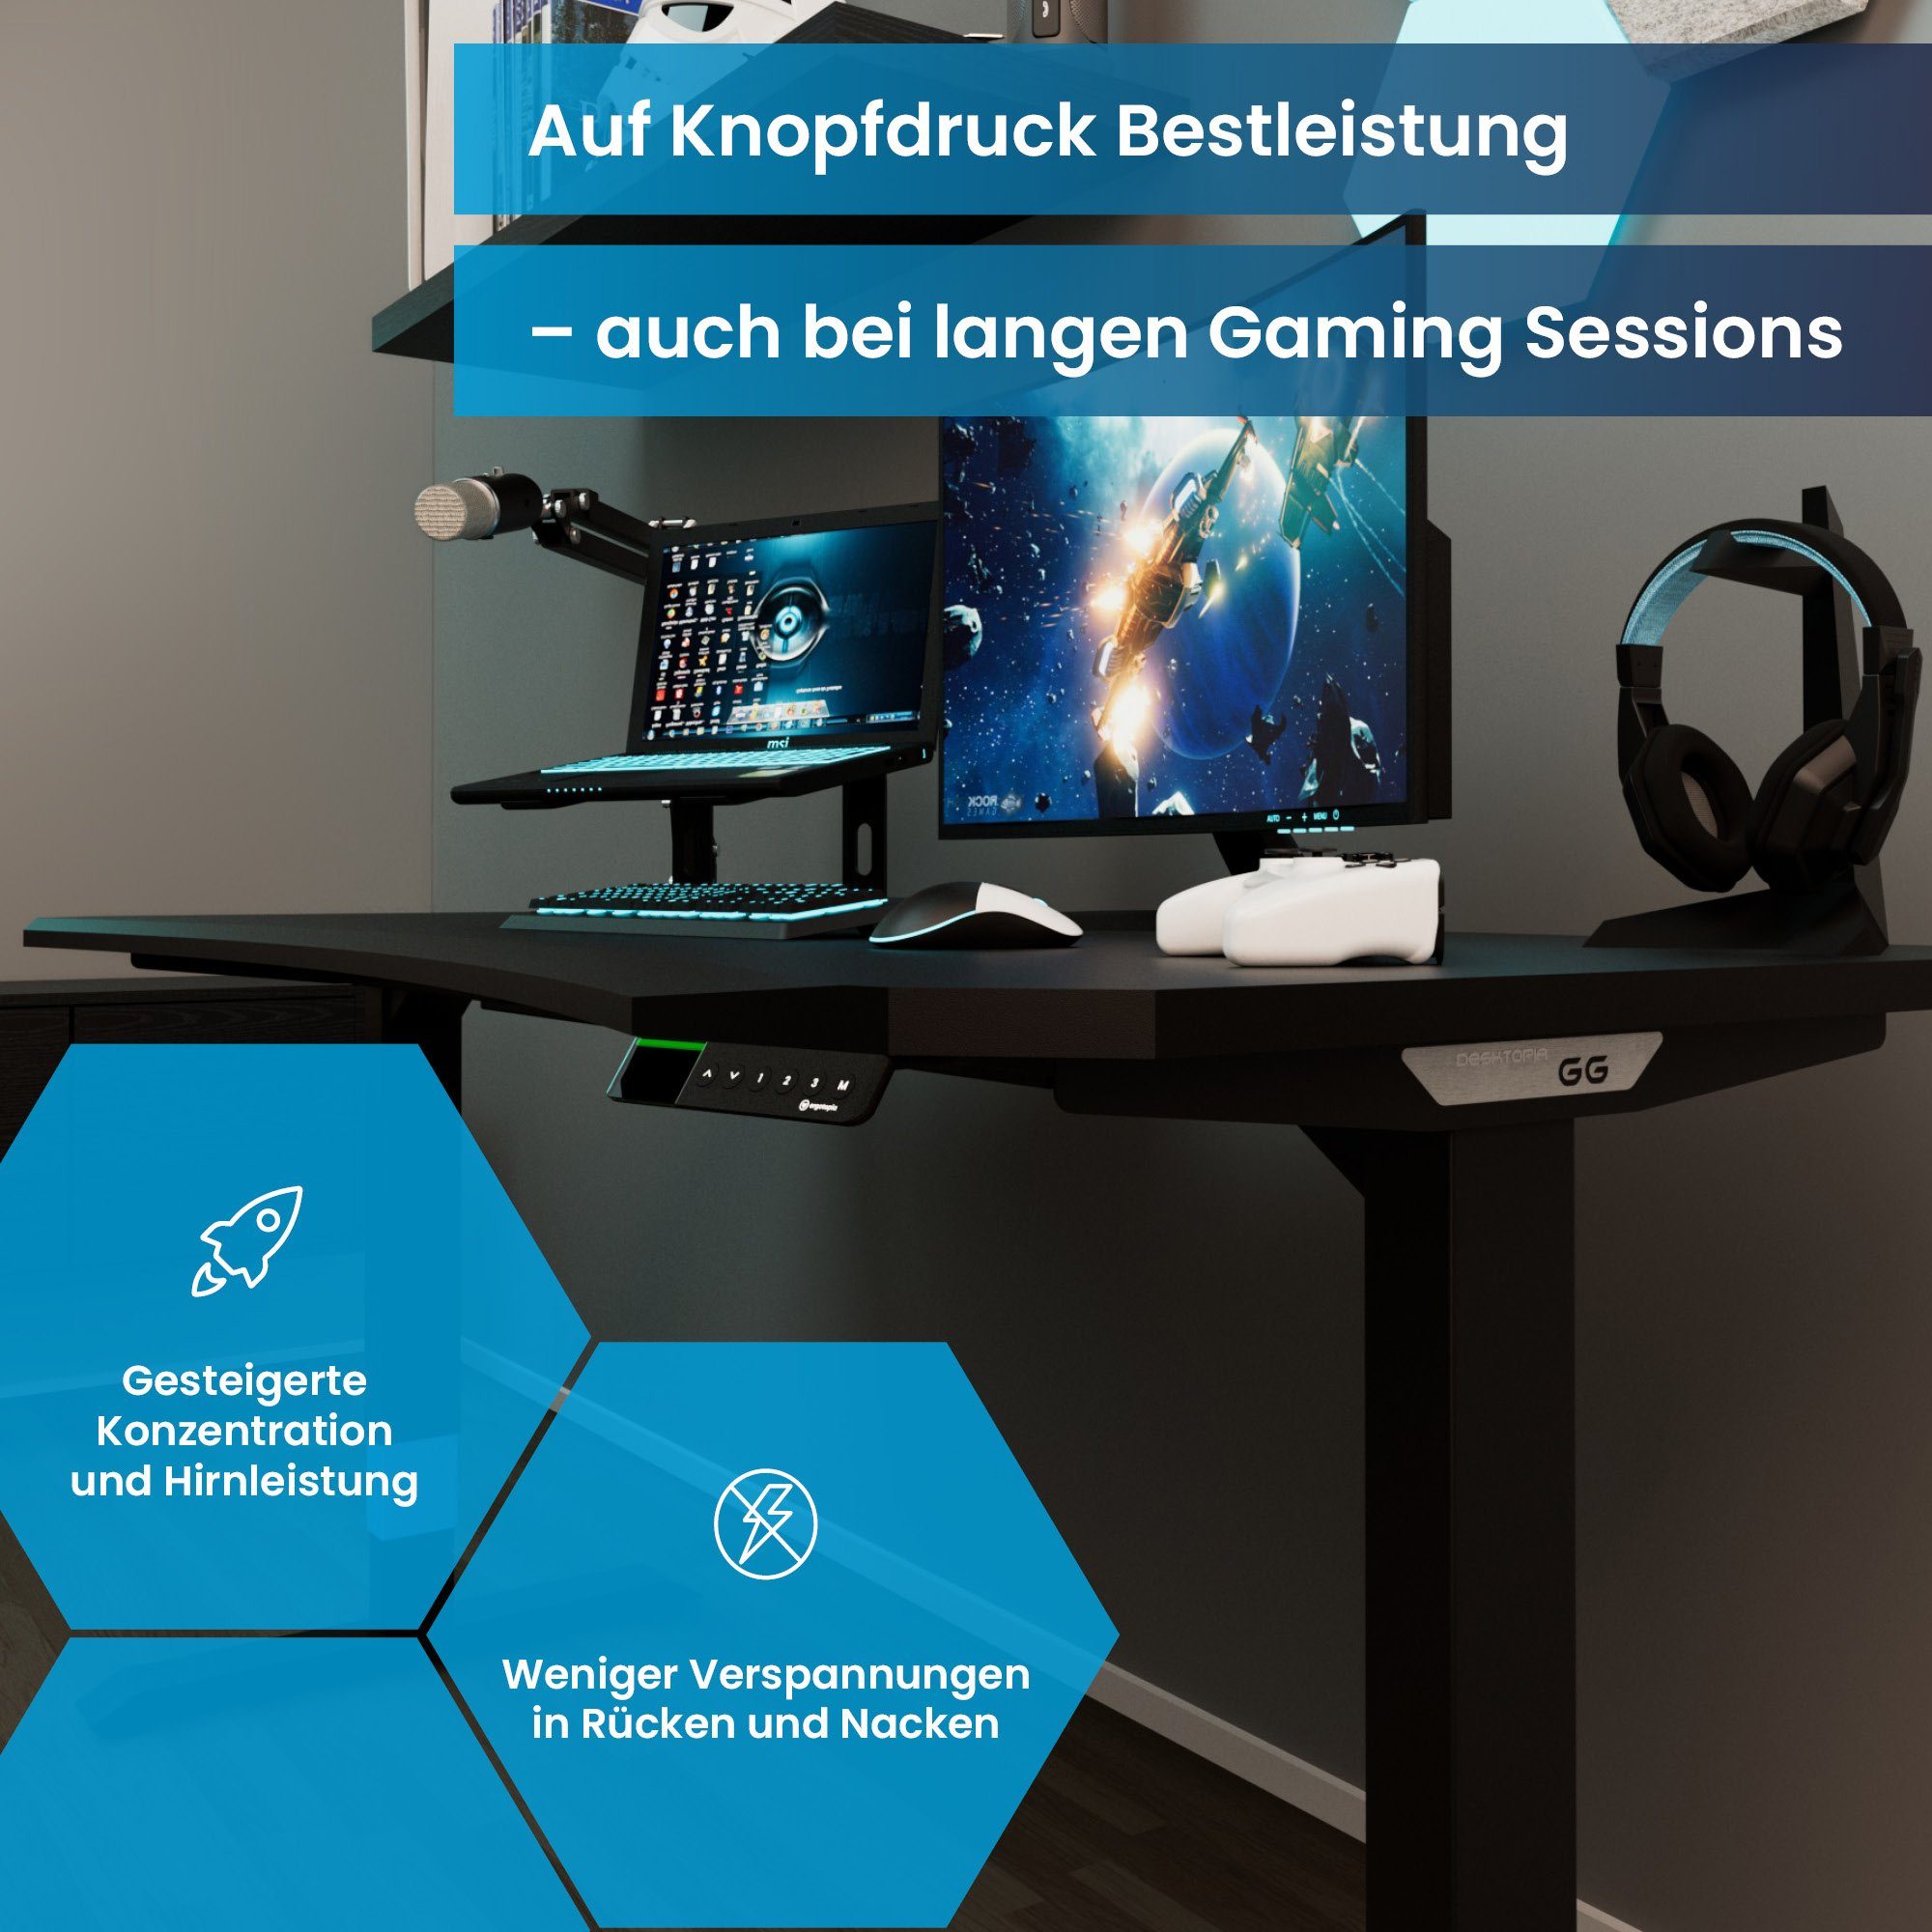 7 Desktopia ergonomisches Gamingtisch | GG Schwarz/Blau (Gaming Jahre Curved Elektrisch Gaming Tisch als Premium höhenverstellbarer Ergotopia Gaming Schreibtisch Garantie Setup), Midnight Black